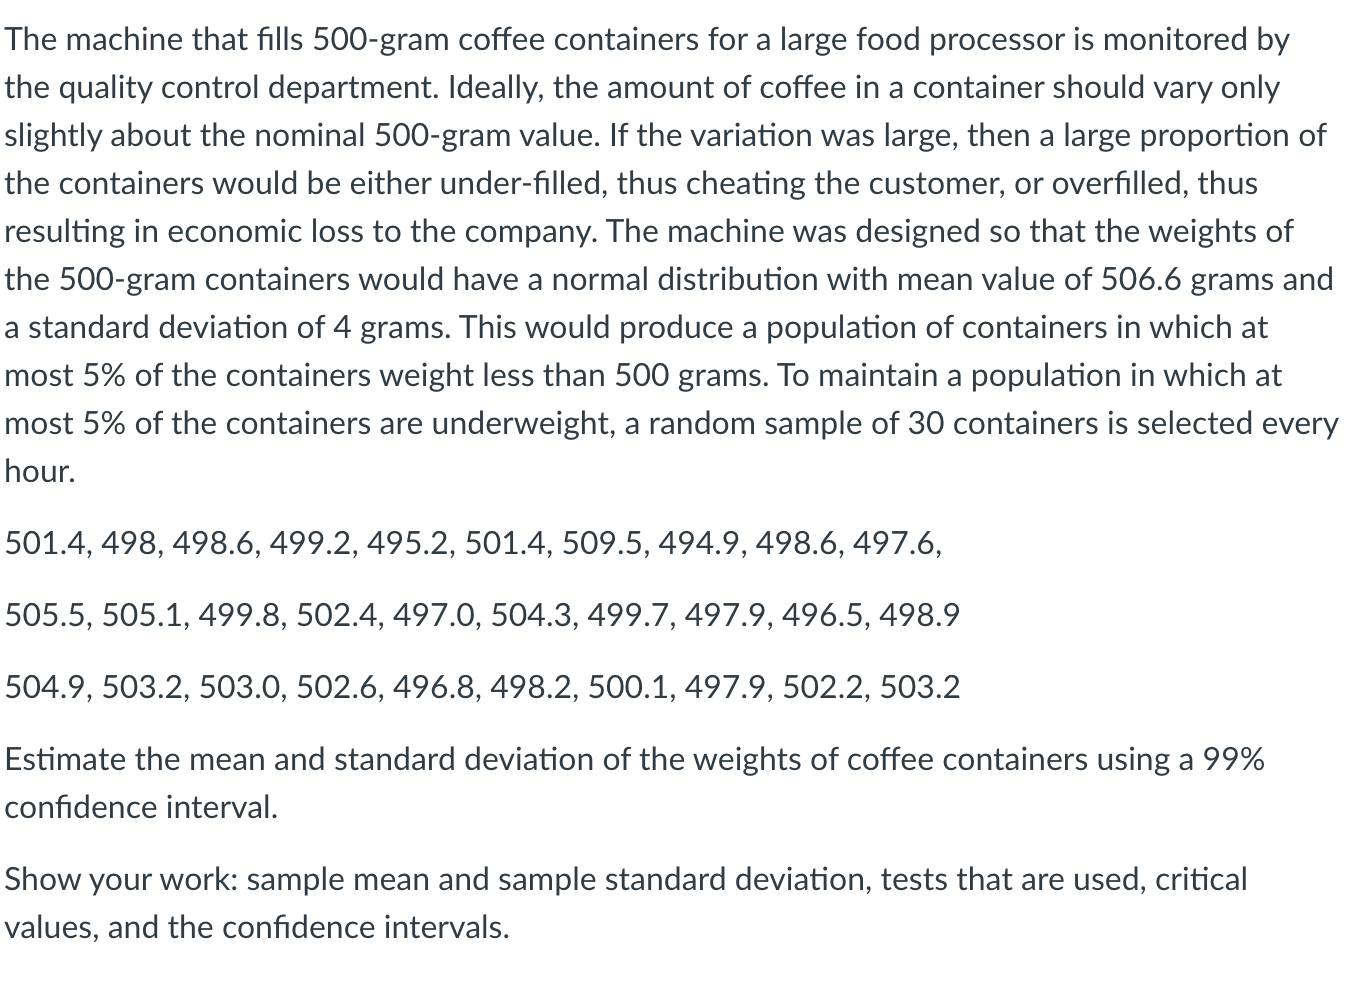 Conilon coffee price in the domestic market beats $ 500 per bag